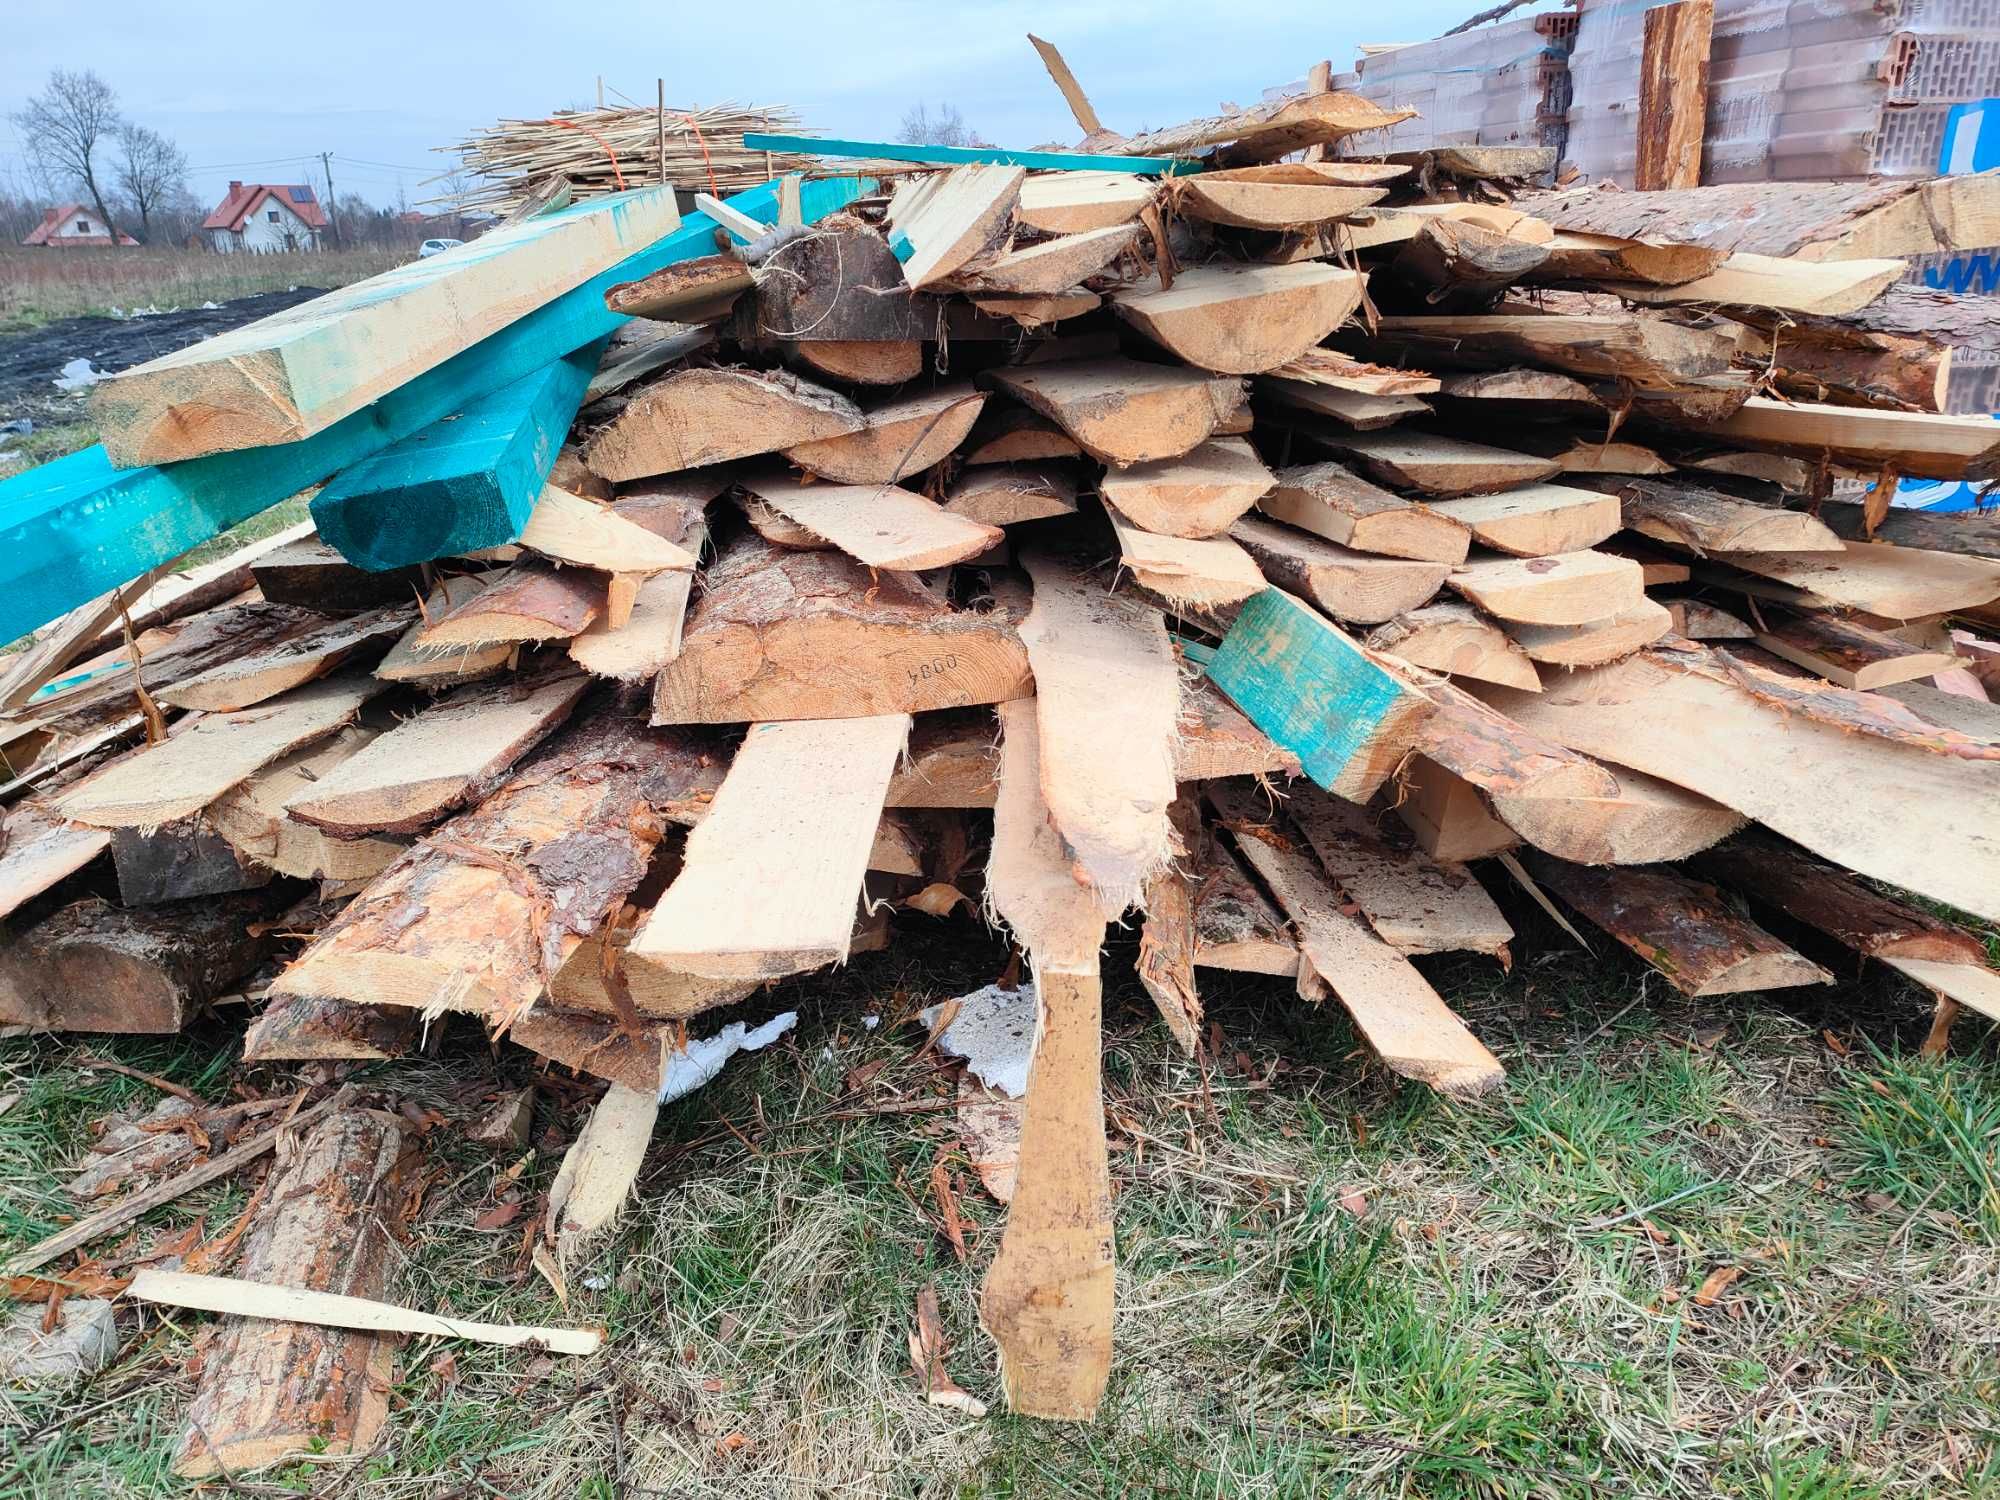 TANIO SPRZEDAM drewno na opał. Sosnowe: Zrzyny (15 mp), deski (12mp).